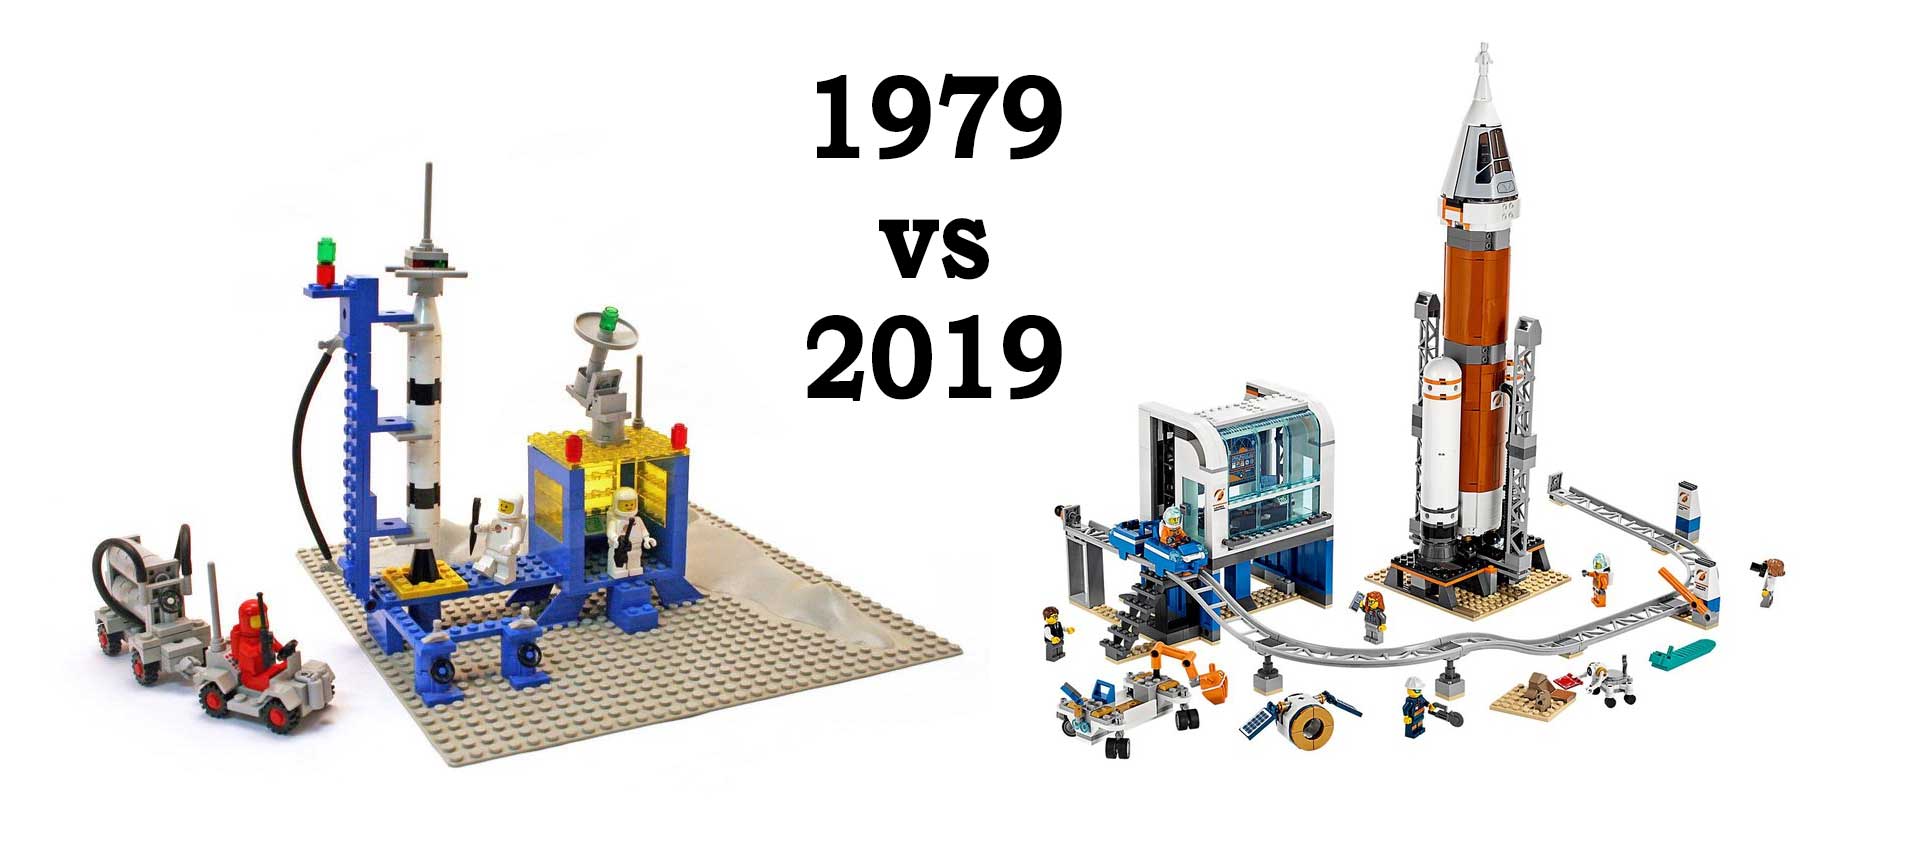 Space 1979 vs 2019